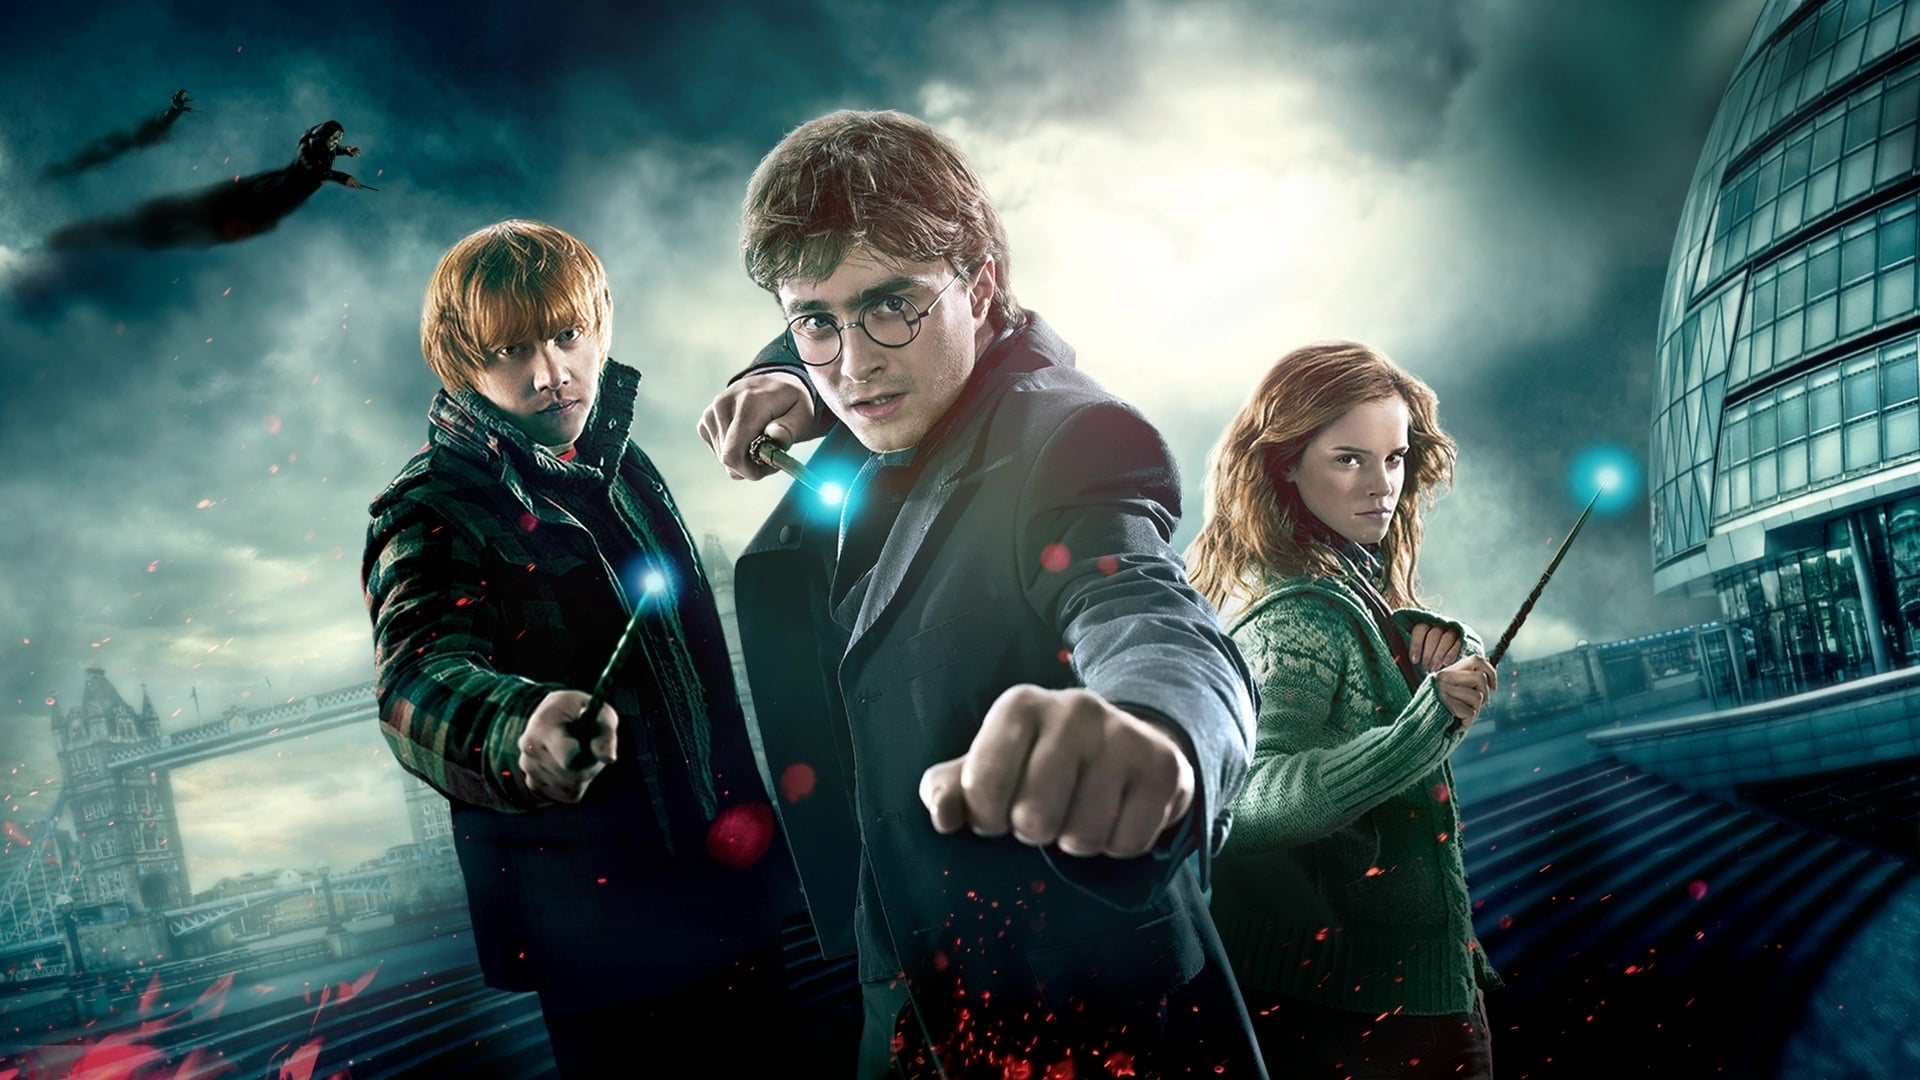 Harry Potter és a Halál ereklyéi 1. rész online teljes film magyarul